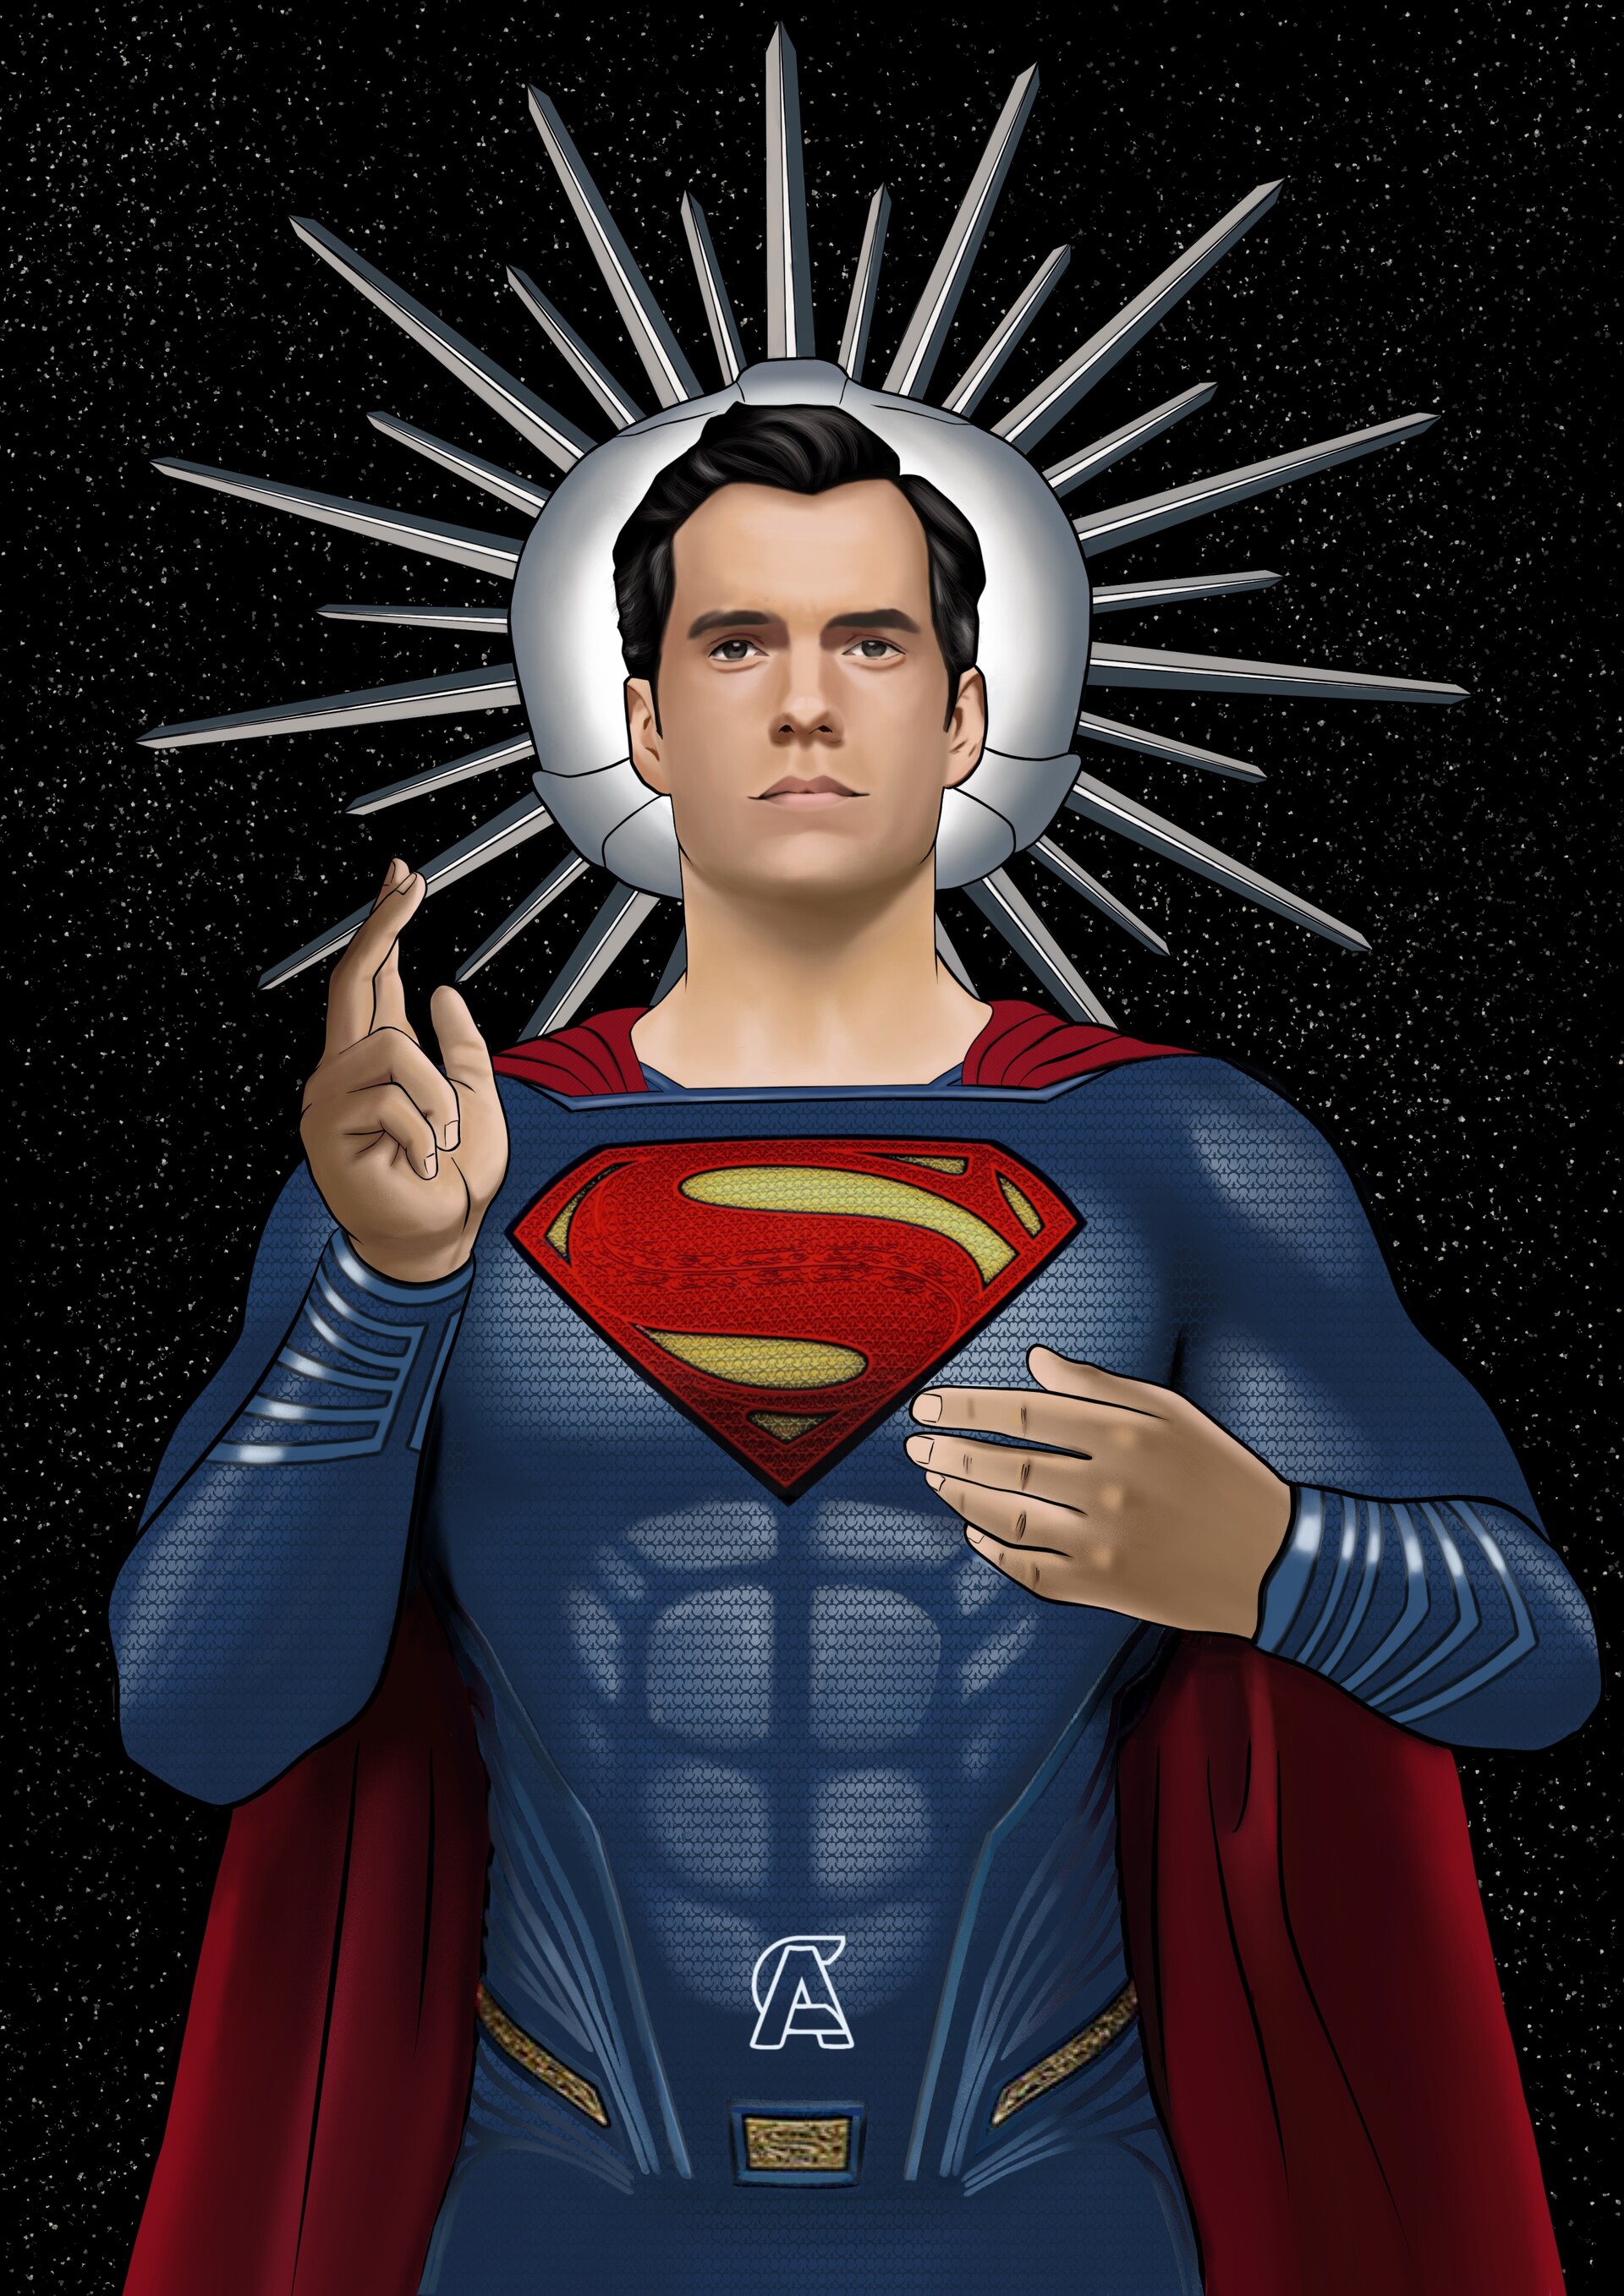 superman, superheroes, henry cavill, artist, artwork, digital art